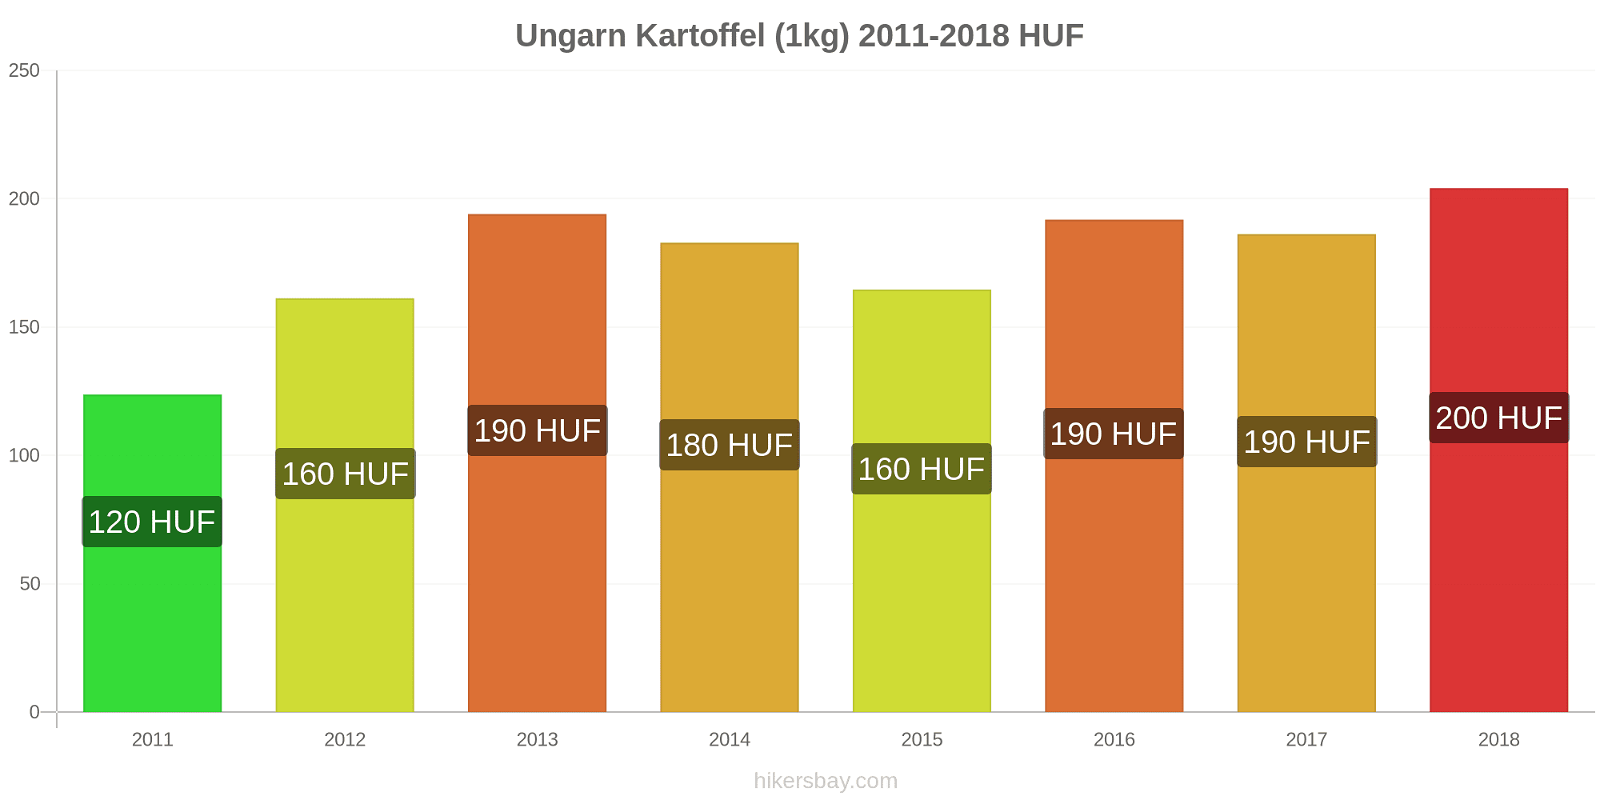 Ungarn prisændringer Kartoffel (1kg) hikersbay.com